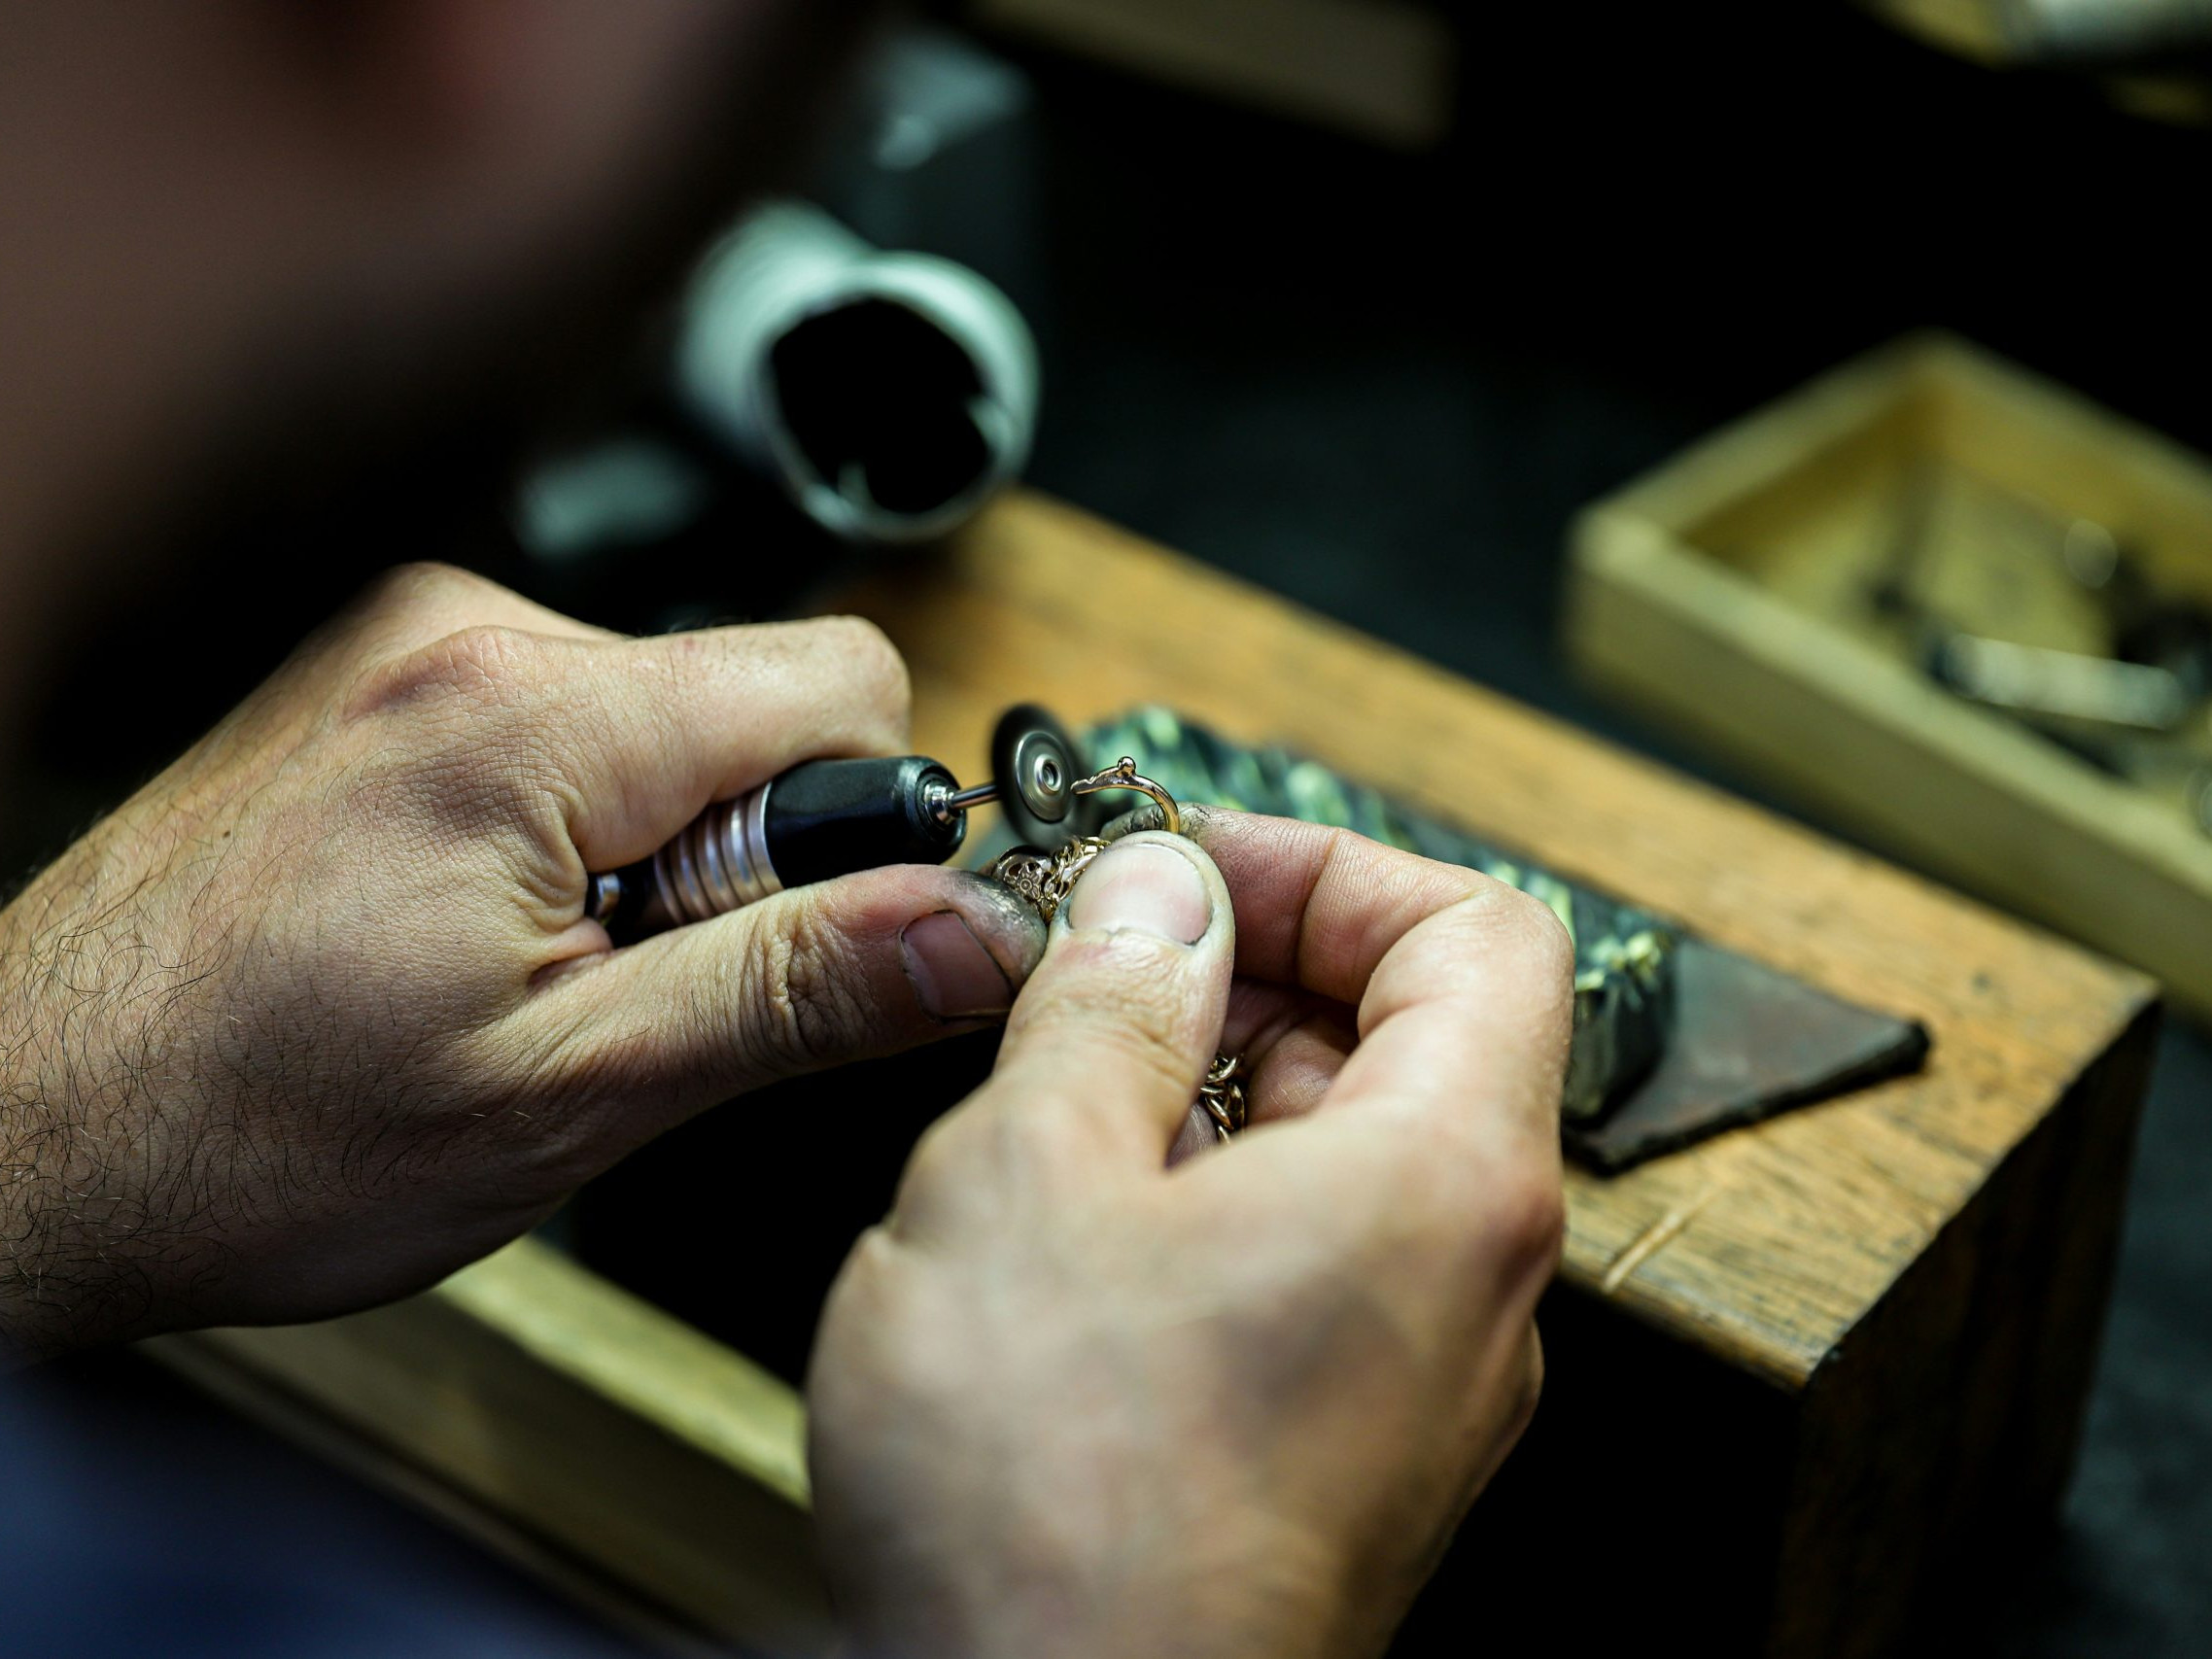 תקריב של ידיו של גמולוג עובד בקפדנות על תיקון תכשיט קטן ומורכב באמצעות כלי עבודה, על שולחן עבודה עמוס.